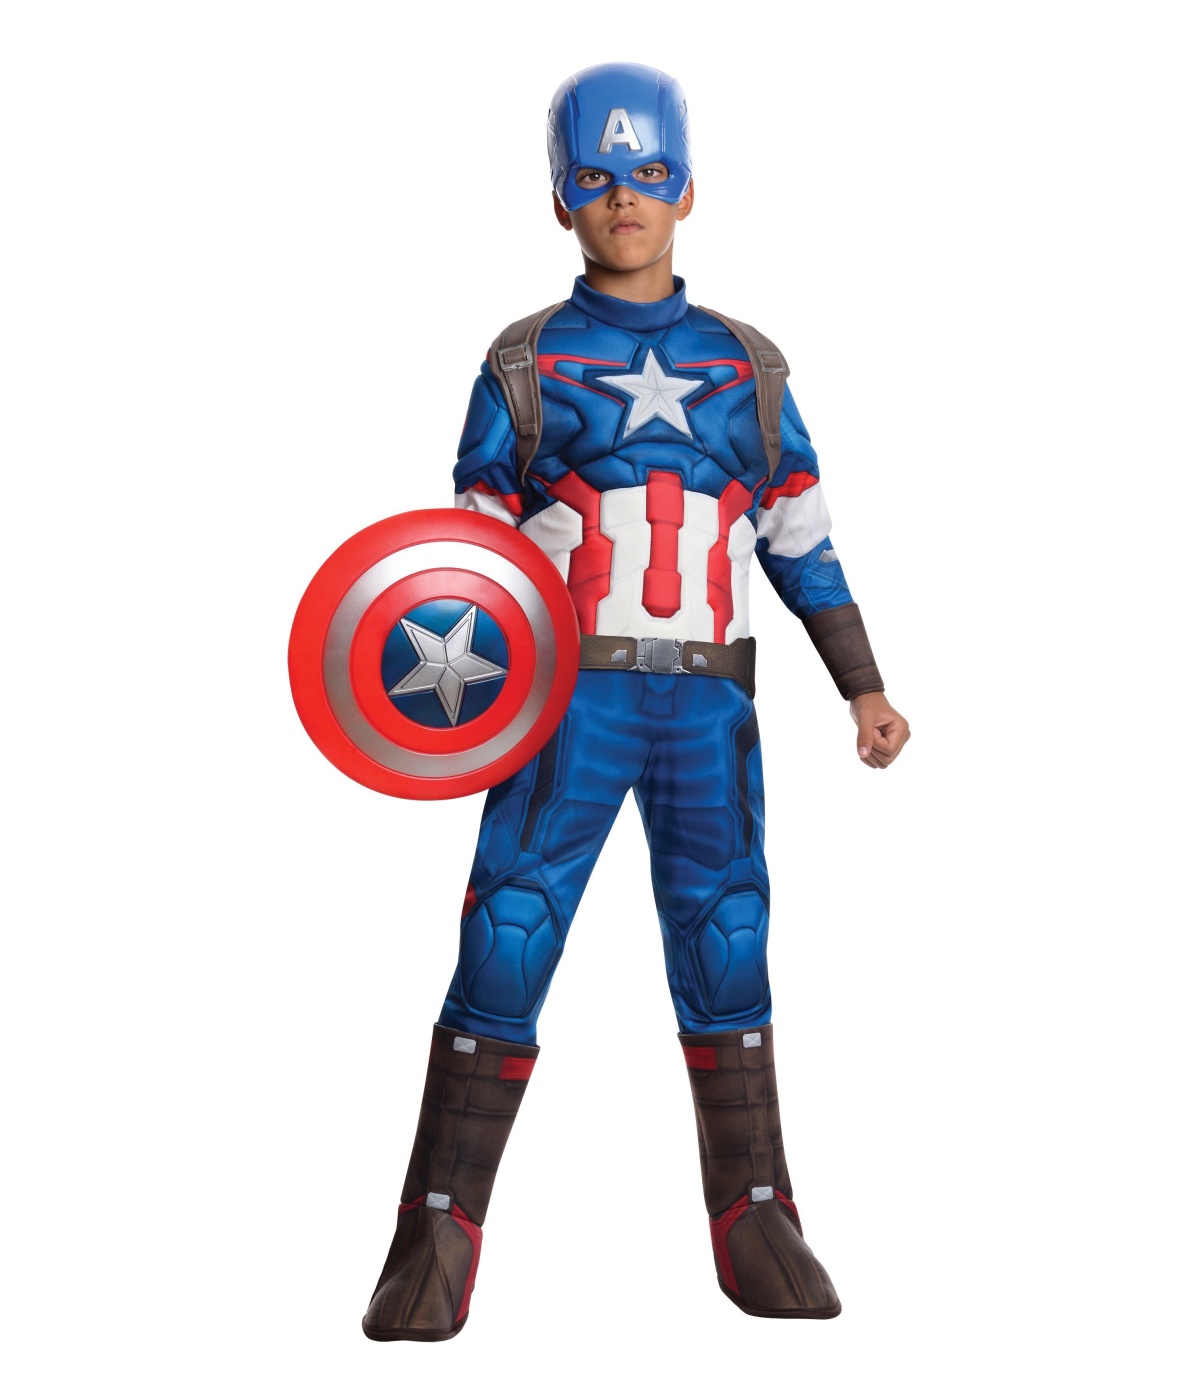  Boys Ultron Captain America Costume